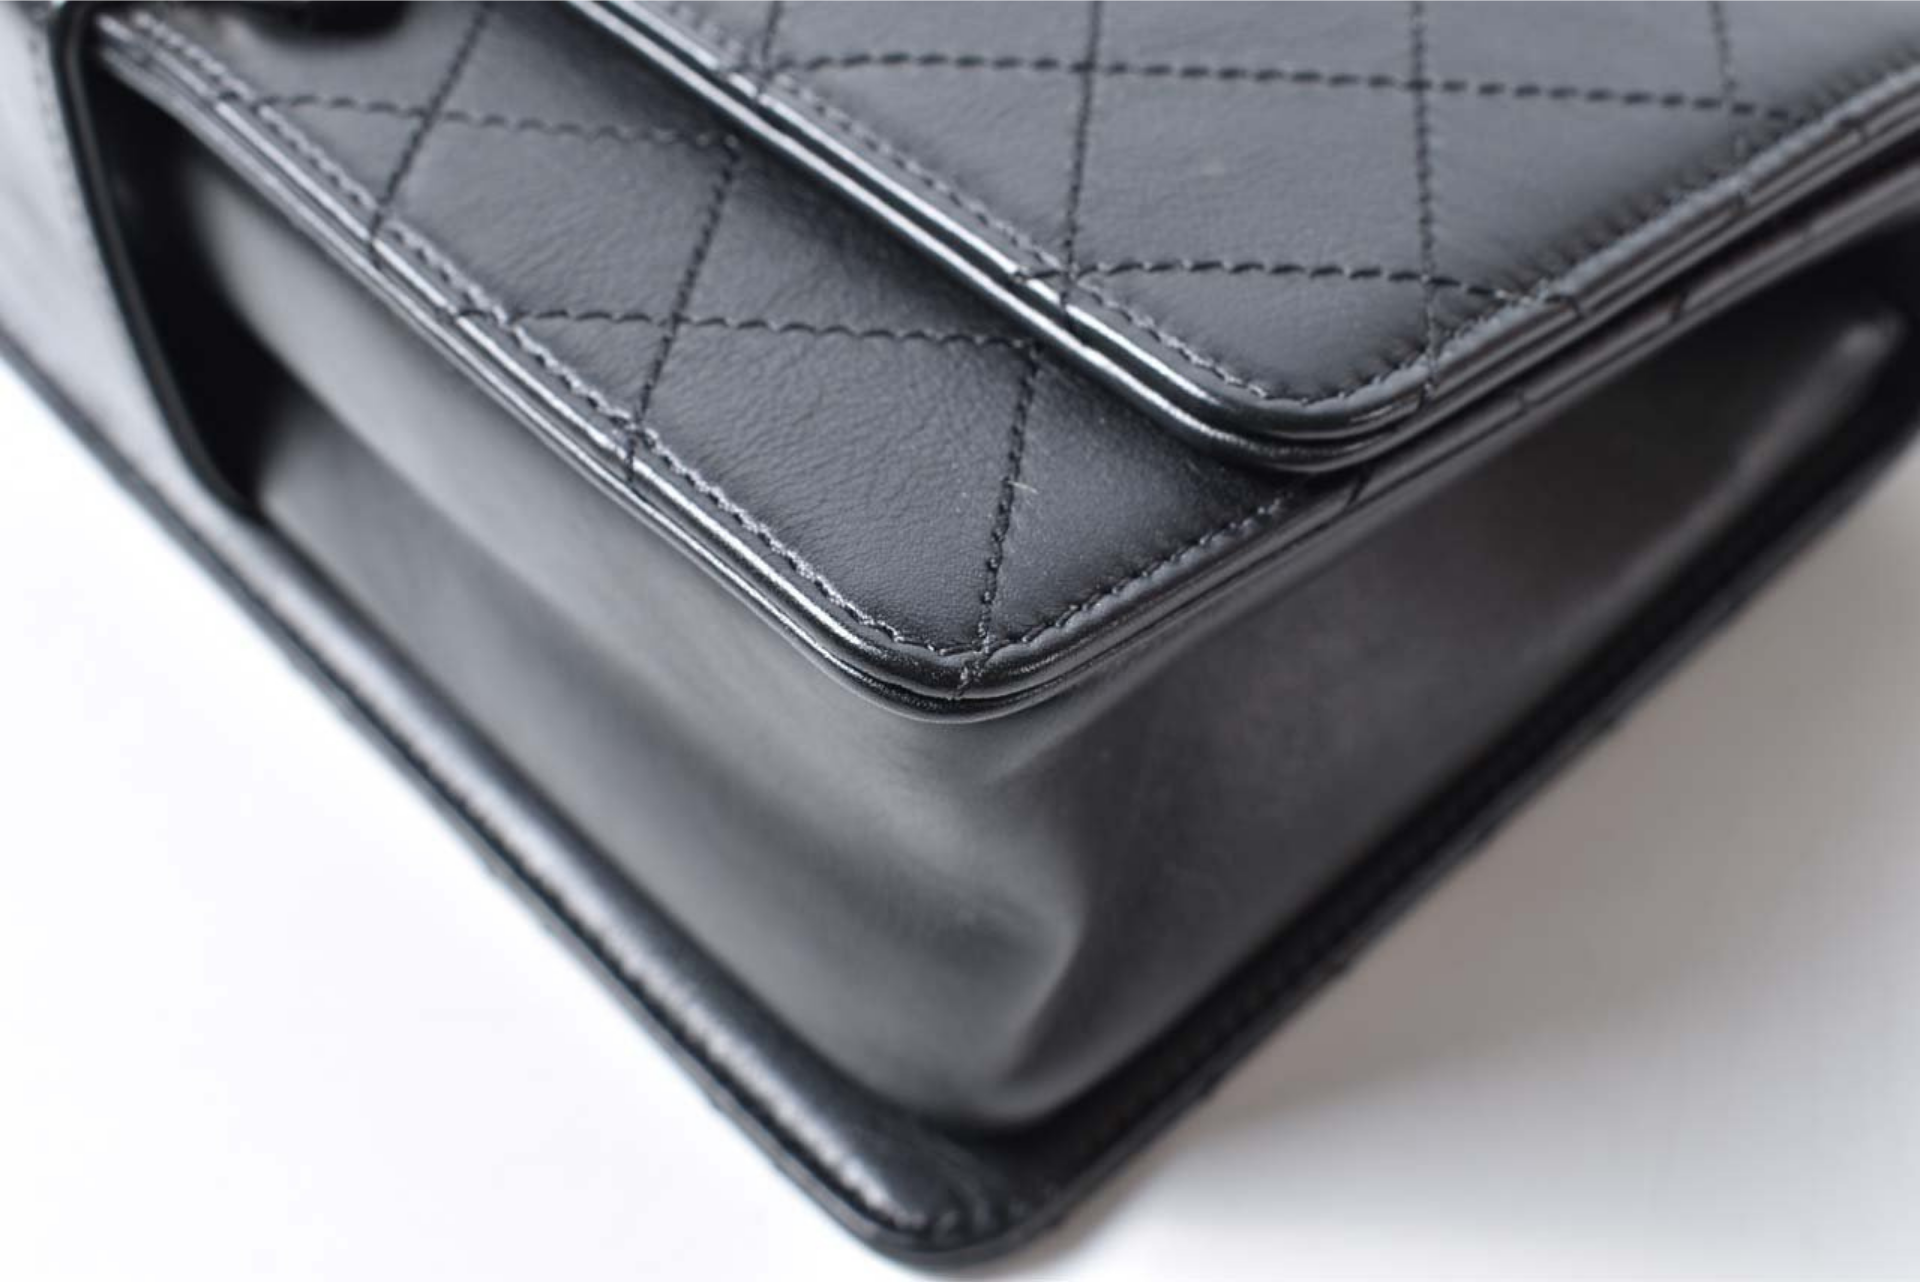 Chanel Black Leather Flap Shoulder Bag